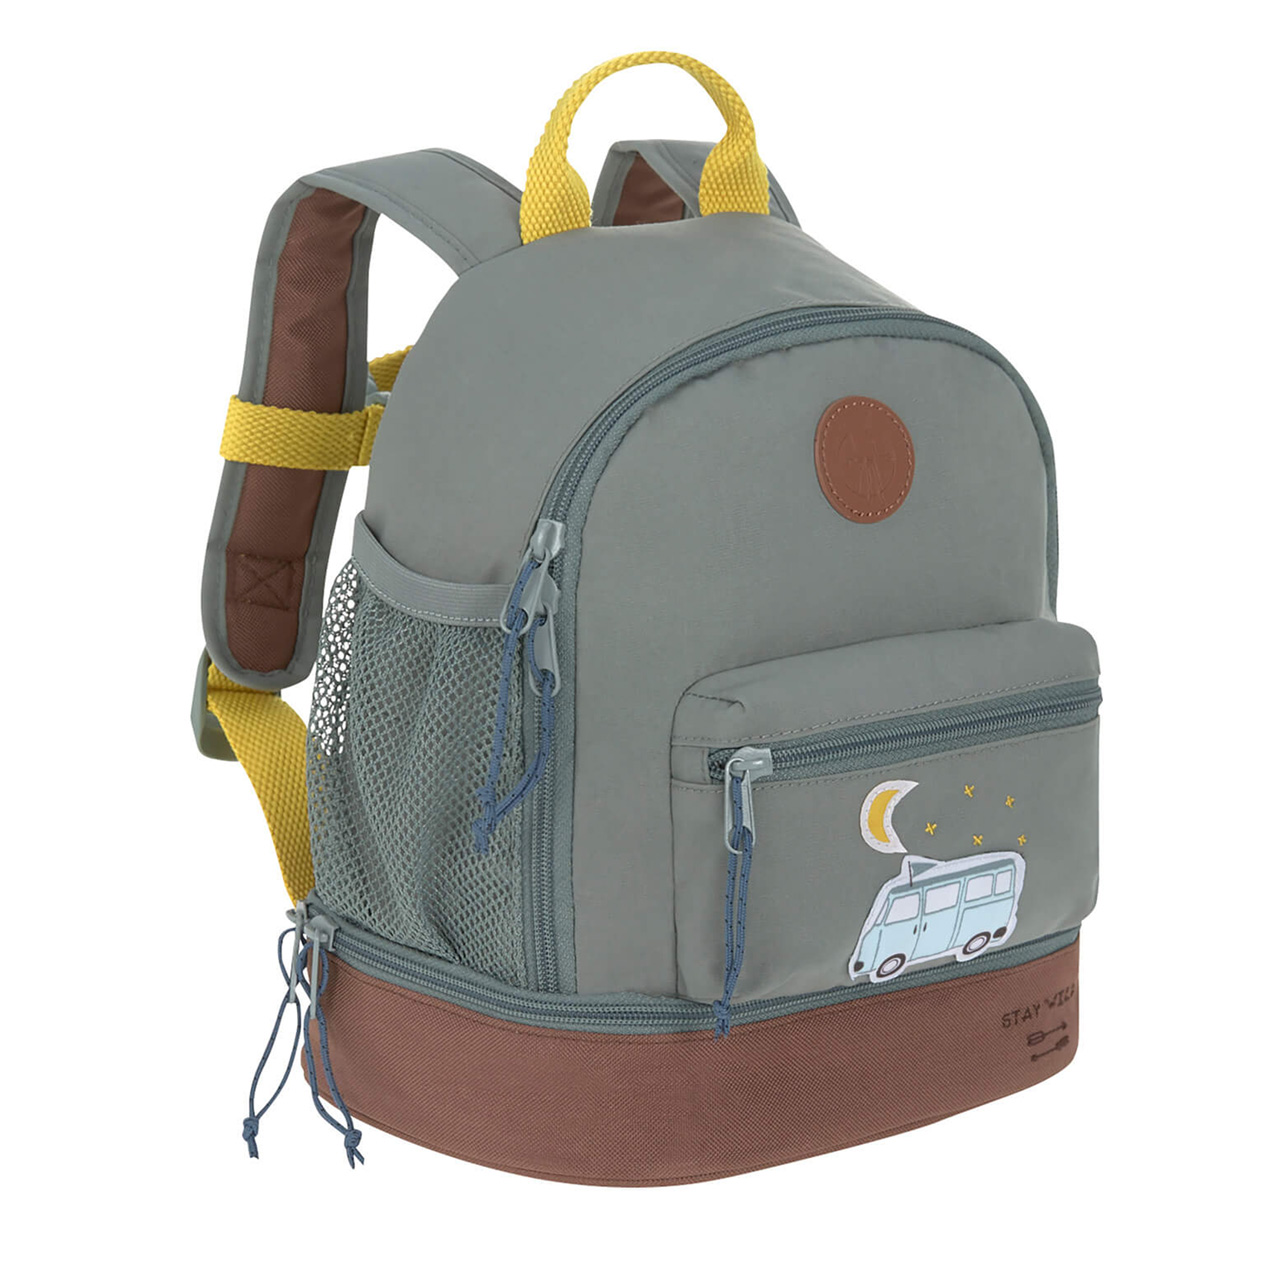 Laessig-Kindergartenrucksack-Adventure-bus-gruen-Kinder-rucksack-online-kaufen-1203001462-lafueliki